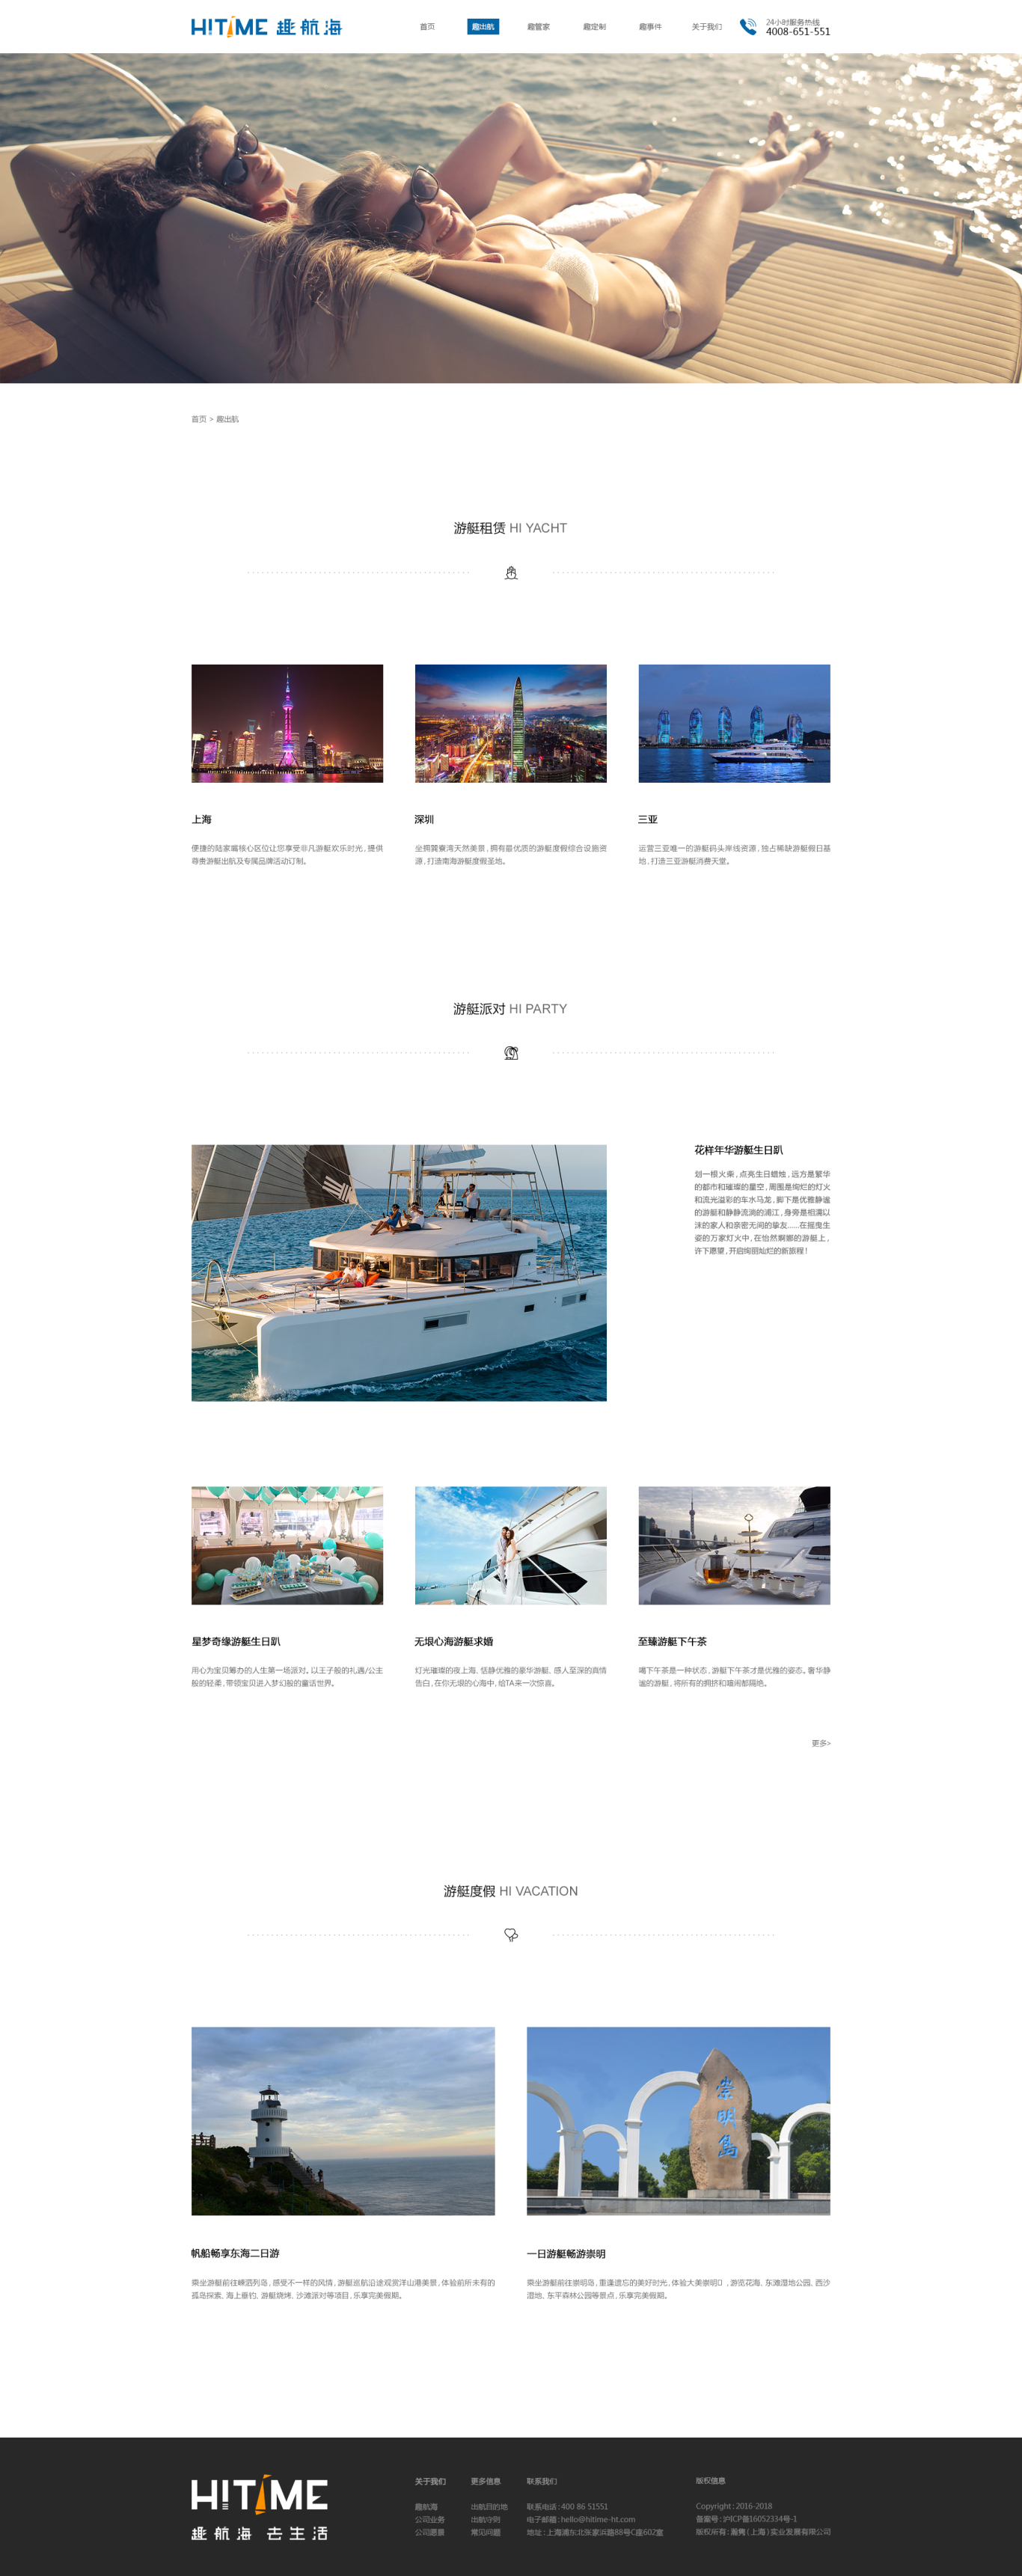 游艇旅游服務官網網站網頁設計圖2